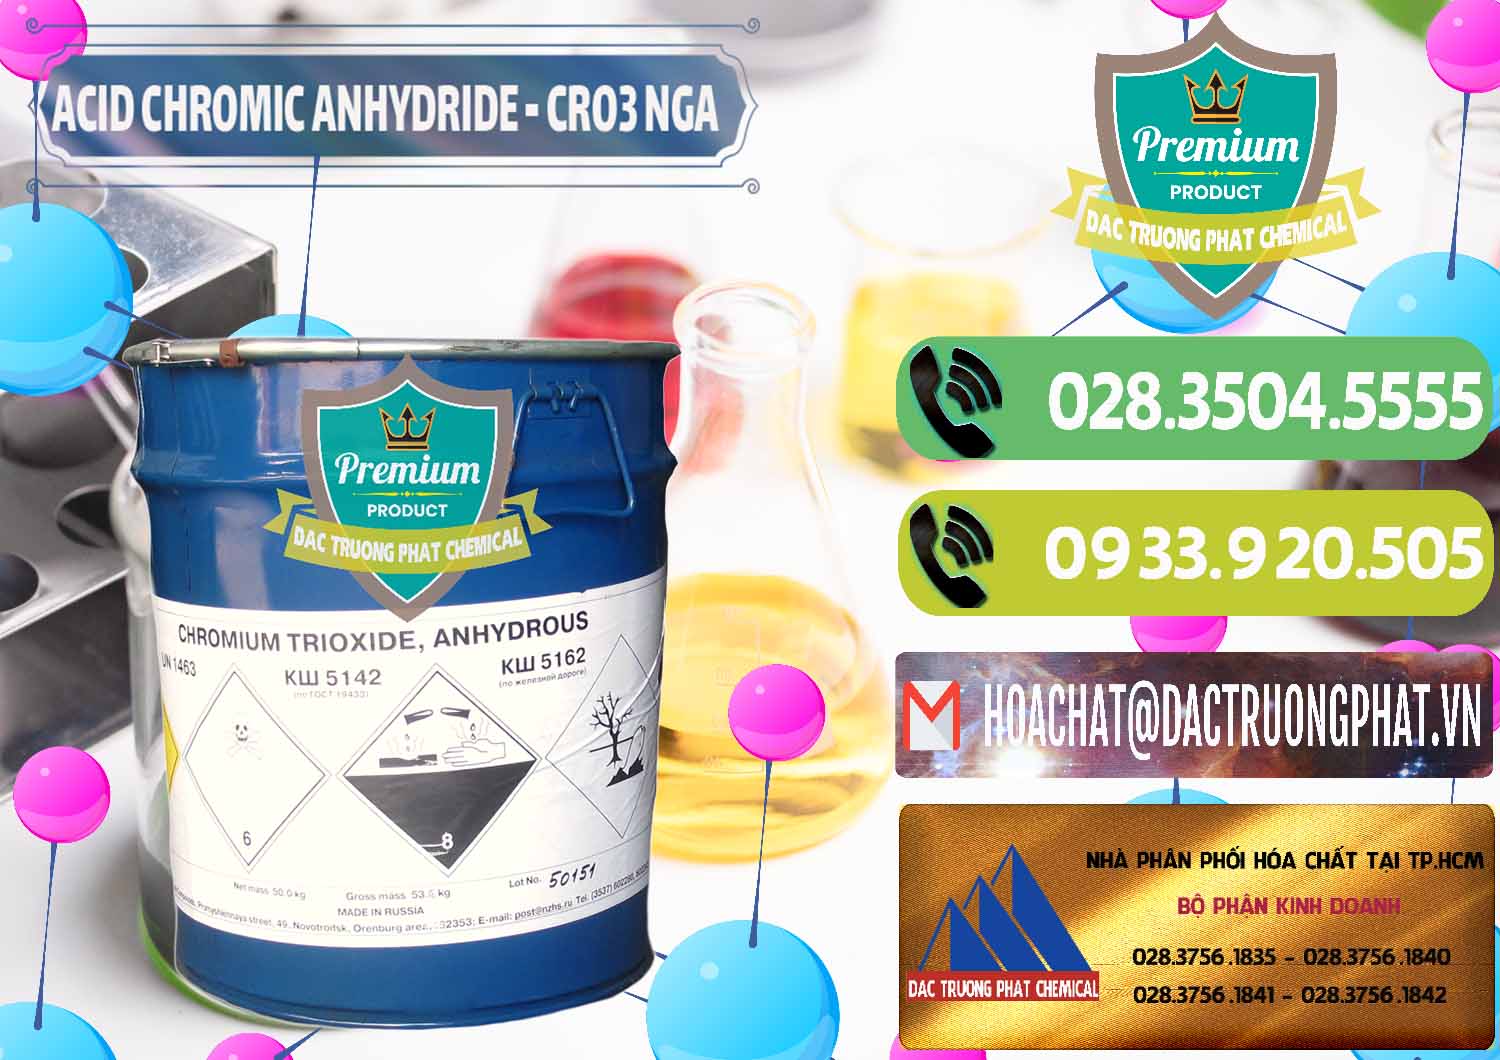 Nơi chuyên kinh doanh _ bán Acid Chromic Anhydride - Cromic CRO3 Nga Russia - 0006 - Công ty cung cấp ( bán ) hóa chất tại TP.HCM - hoachatmientay.vn